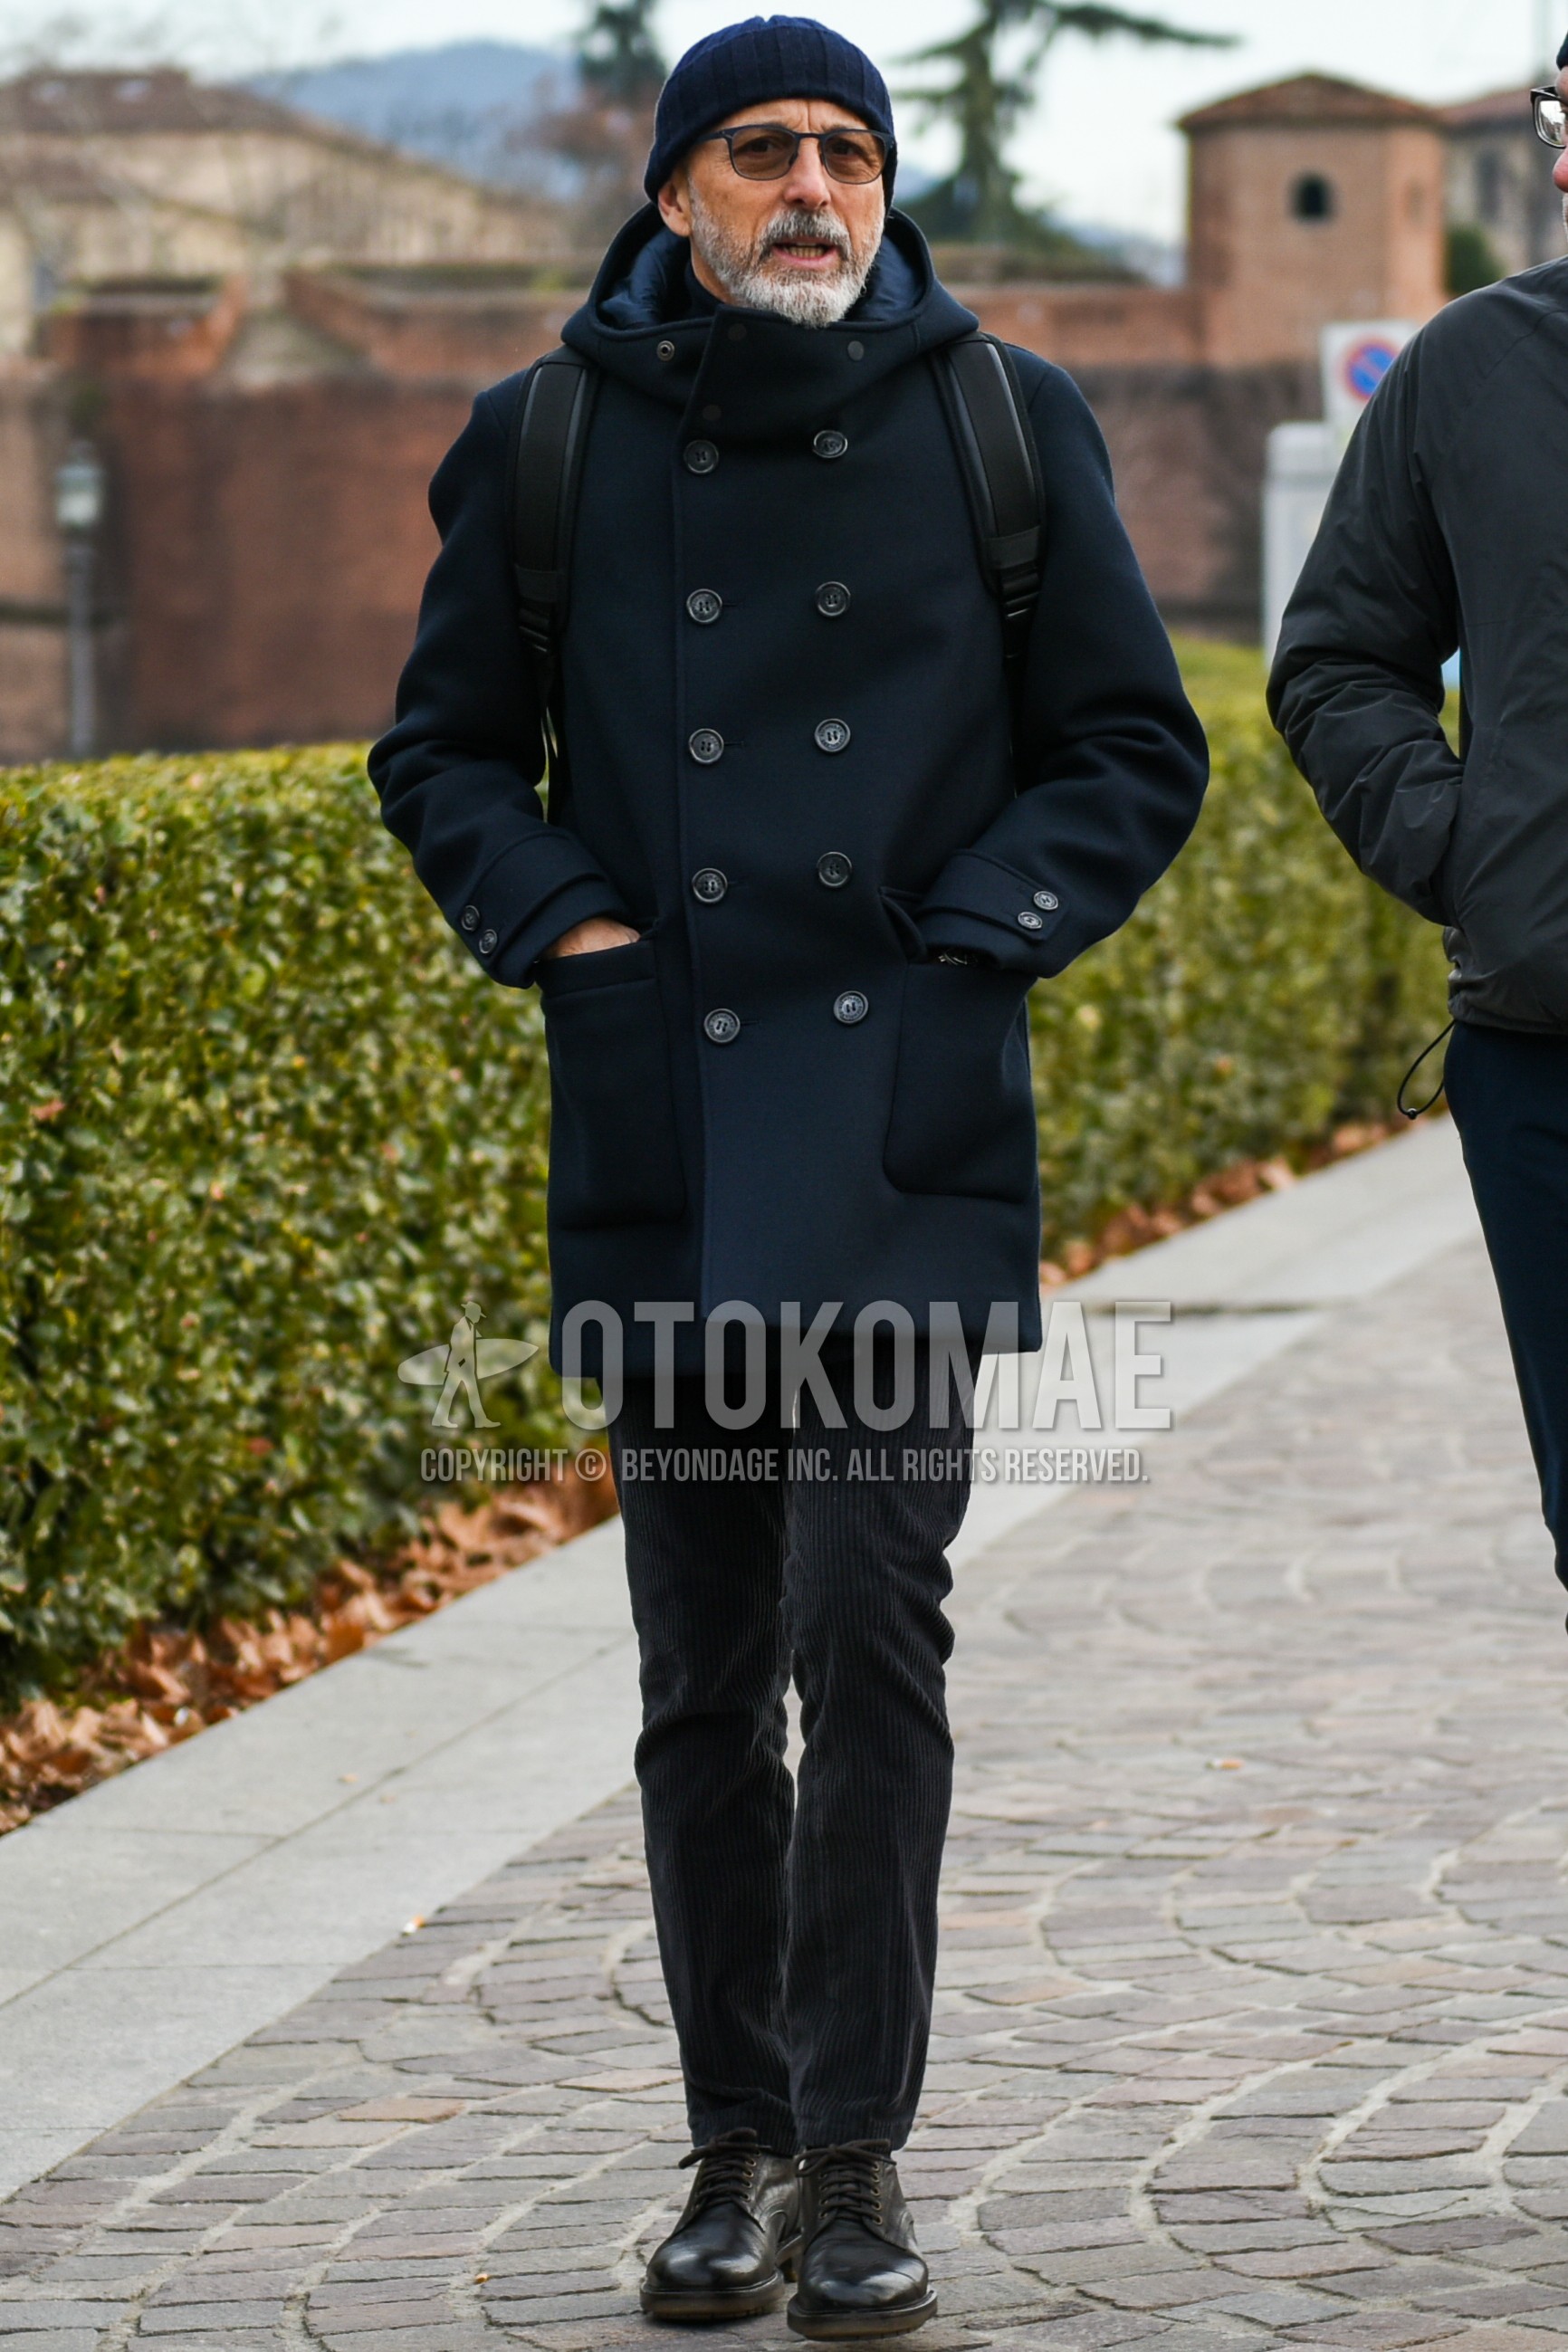 Men's autumn winter outfit with navy plain knit cap, black plain sunglasses, black plain hooded coat, plain winter pants (corduroy,velour), black plain toe leather shoes.